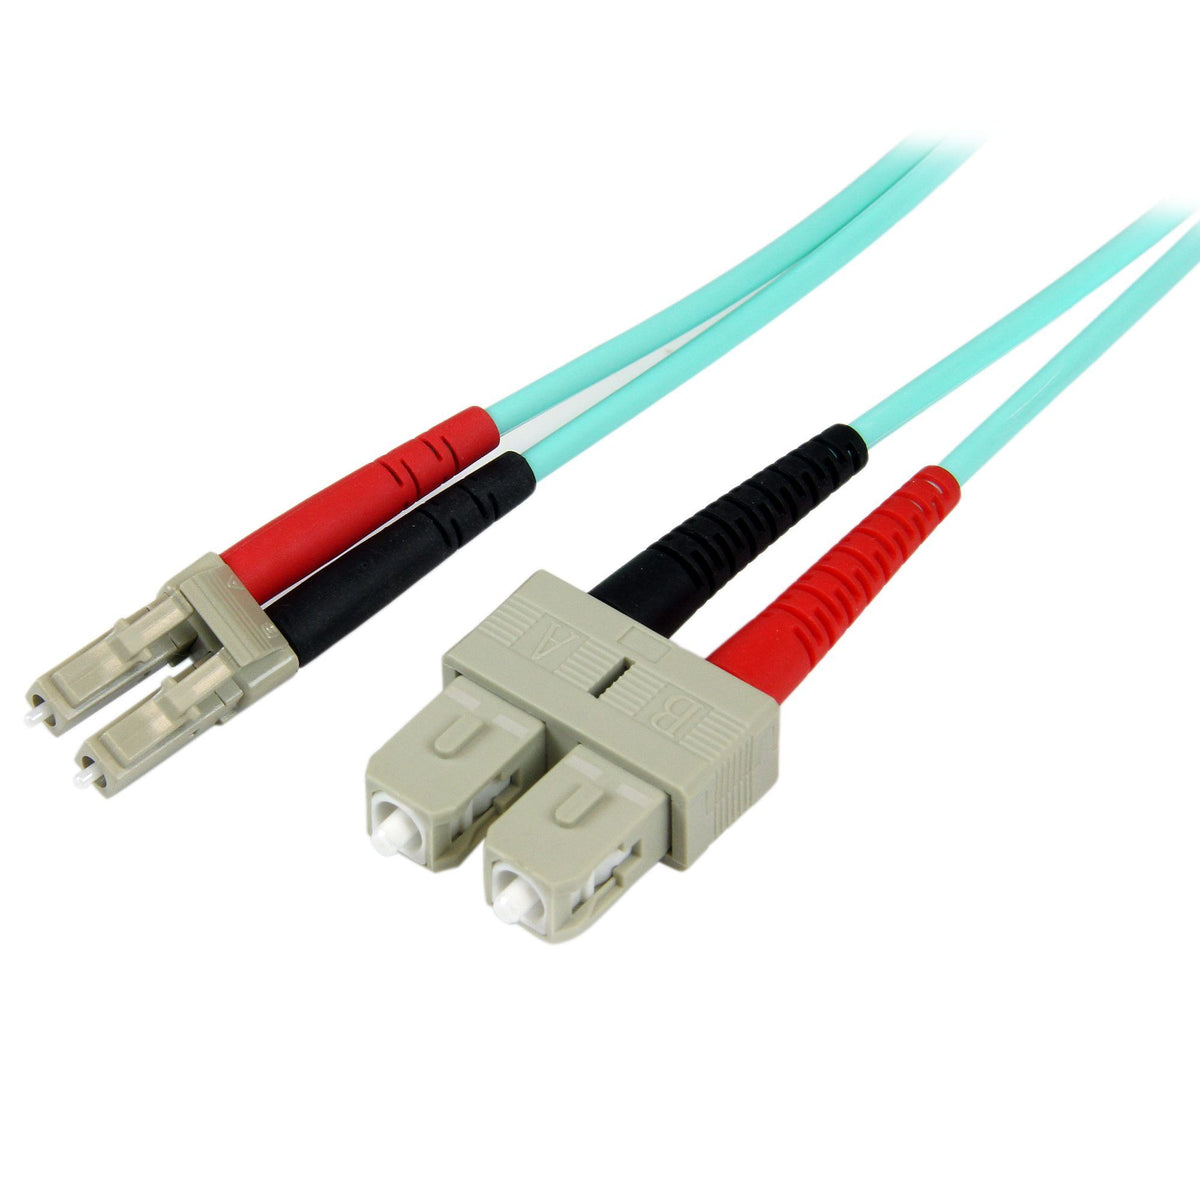 StarTech.com Fiber Optic Cable - 10 Gb Aqua - Multimode Duplex 50/125 - LSZH - LC/SC - 2 m~2m (6ft) LC/UPC to SC/UPC OM3 Multimode Fiber Optic Cable, Full Duplex 50/125µm Zipcord Fiber, 100G Networks, LOMMF/VCSEL,